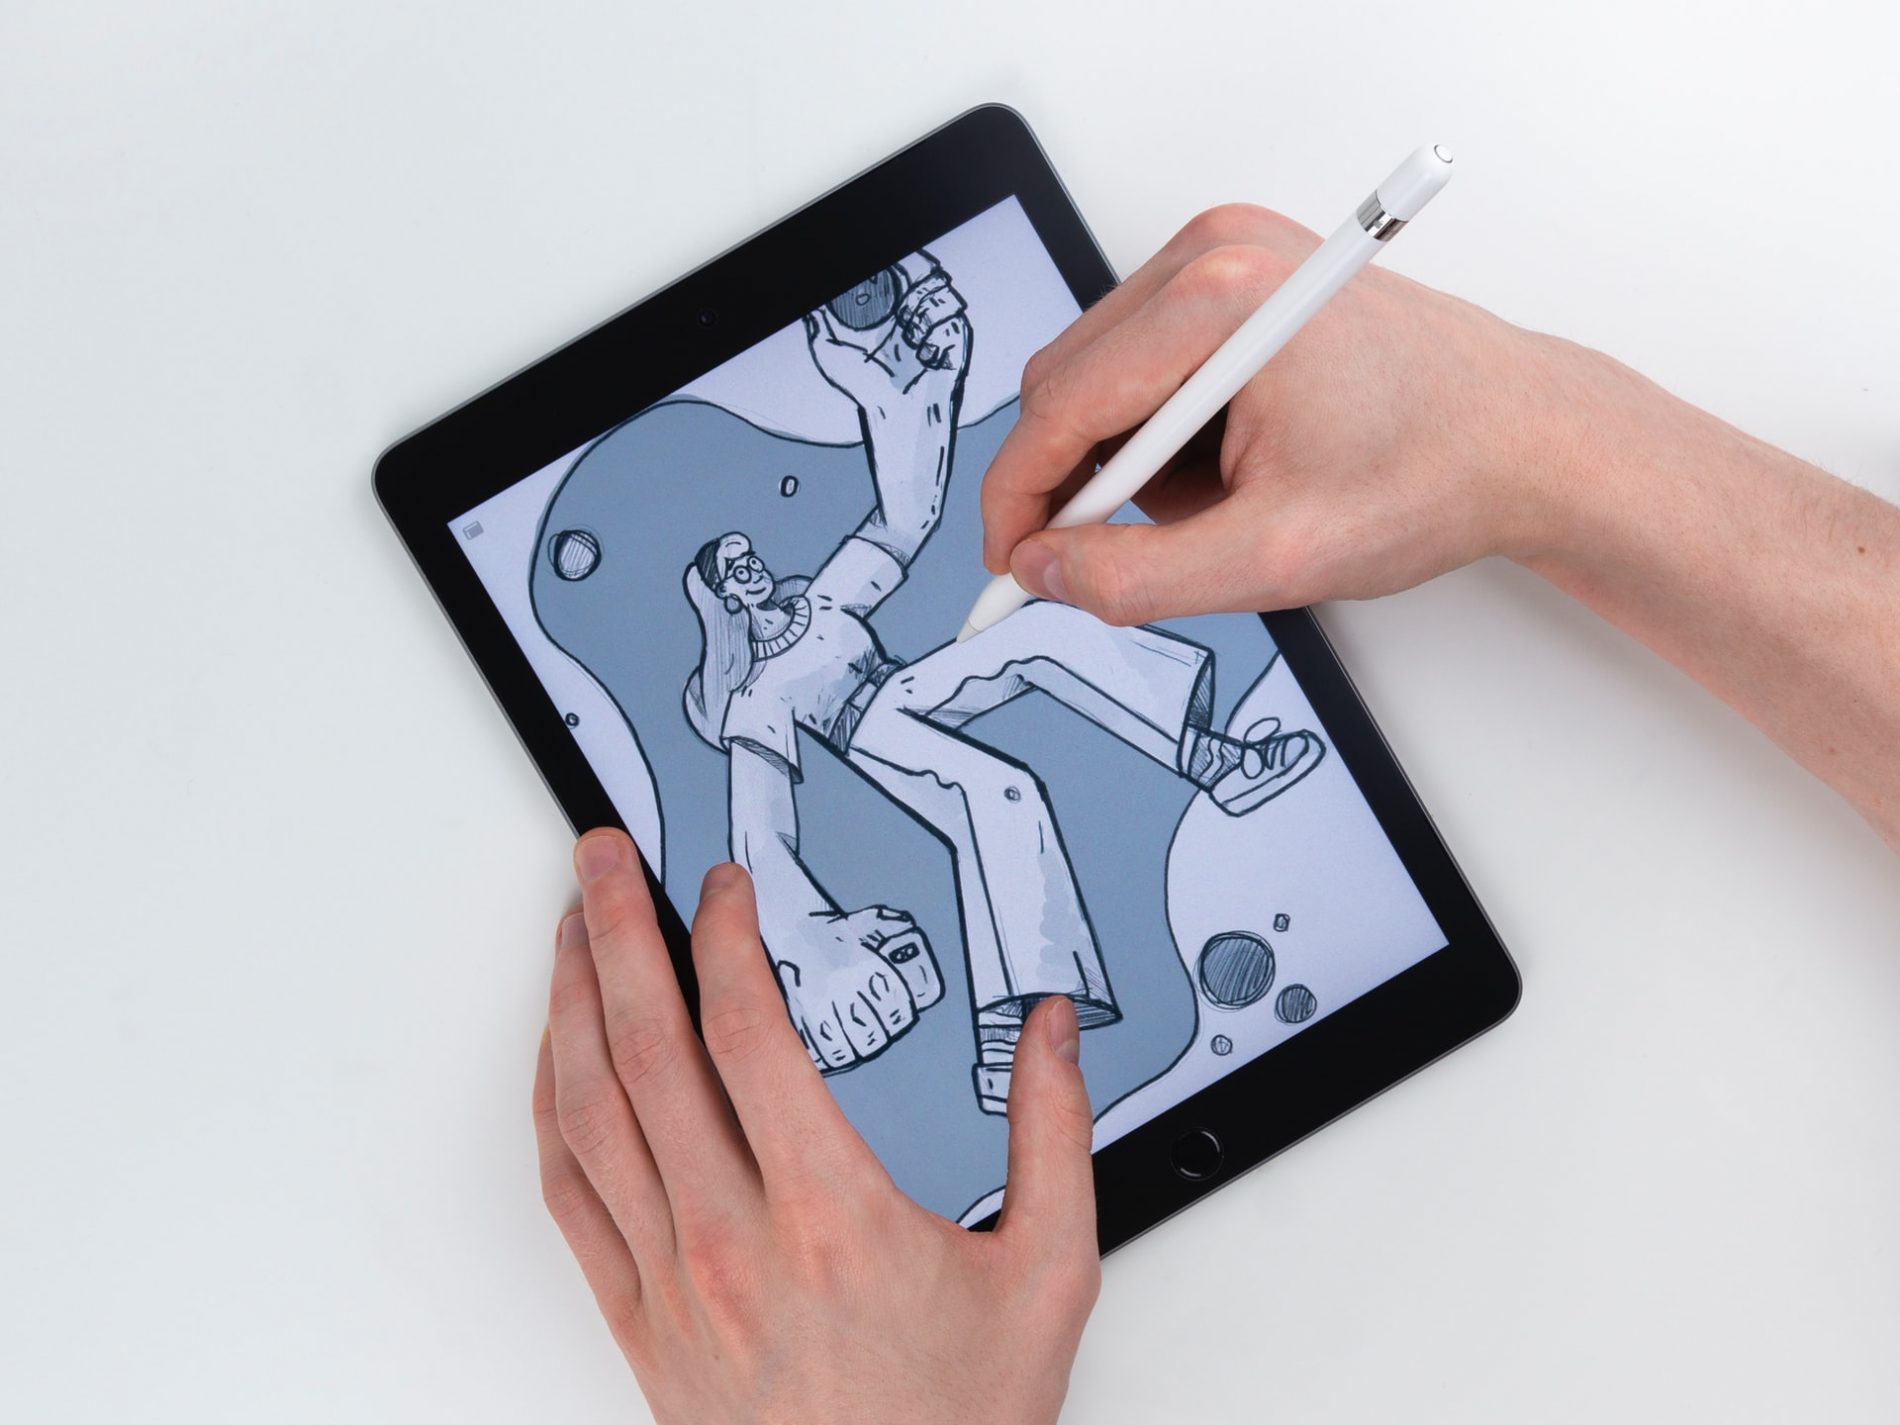 Corsi illustrazione online: impara a illustrare a mano o in digitale